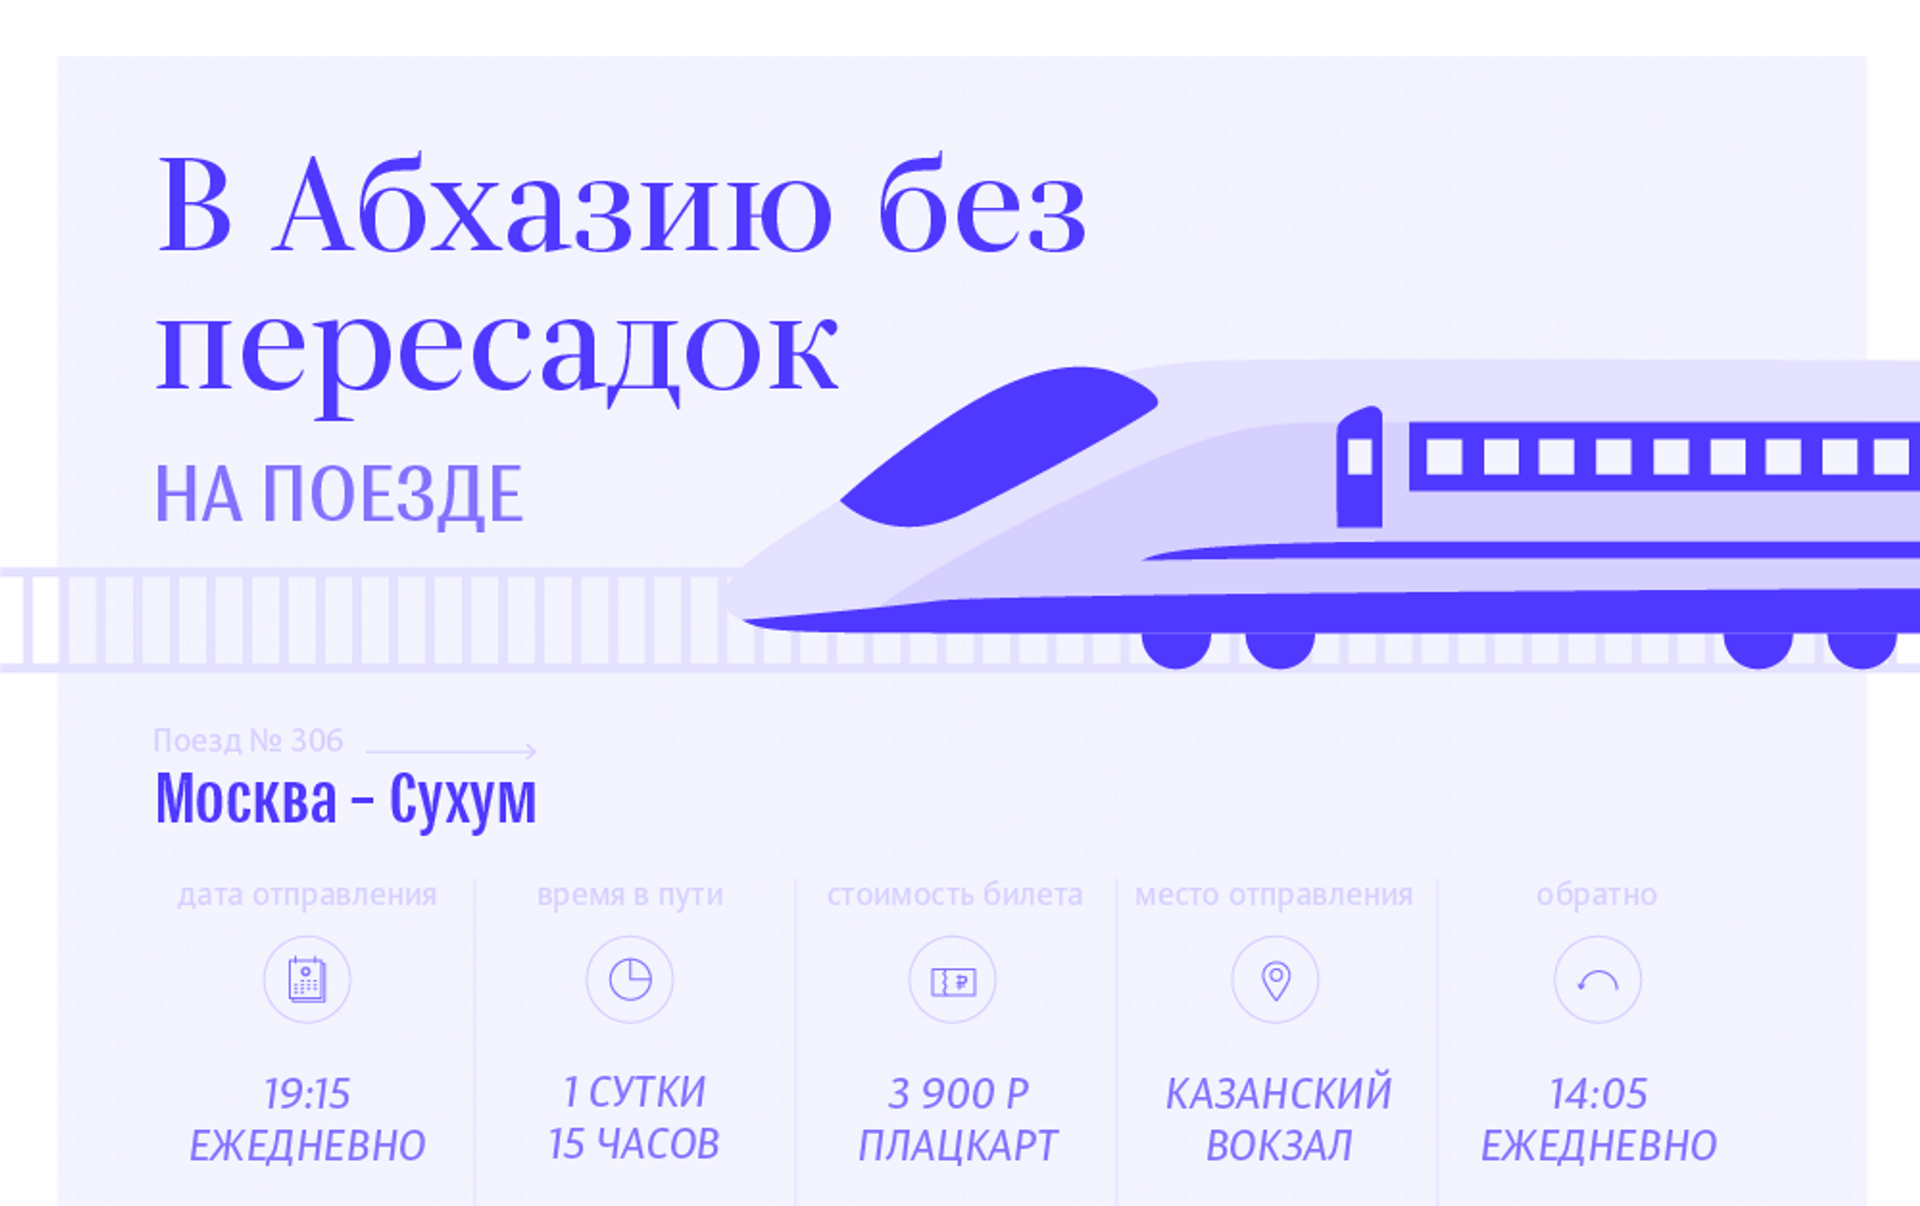 Билет до сухуми. Билеты в Абхазию на поезде. Абхазия билеты на самолет из Москвы. Билет на самолет до Абхазии. Абхазия билеты на самолет.